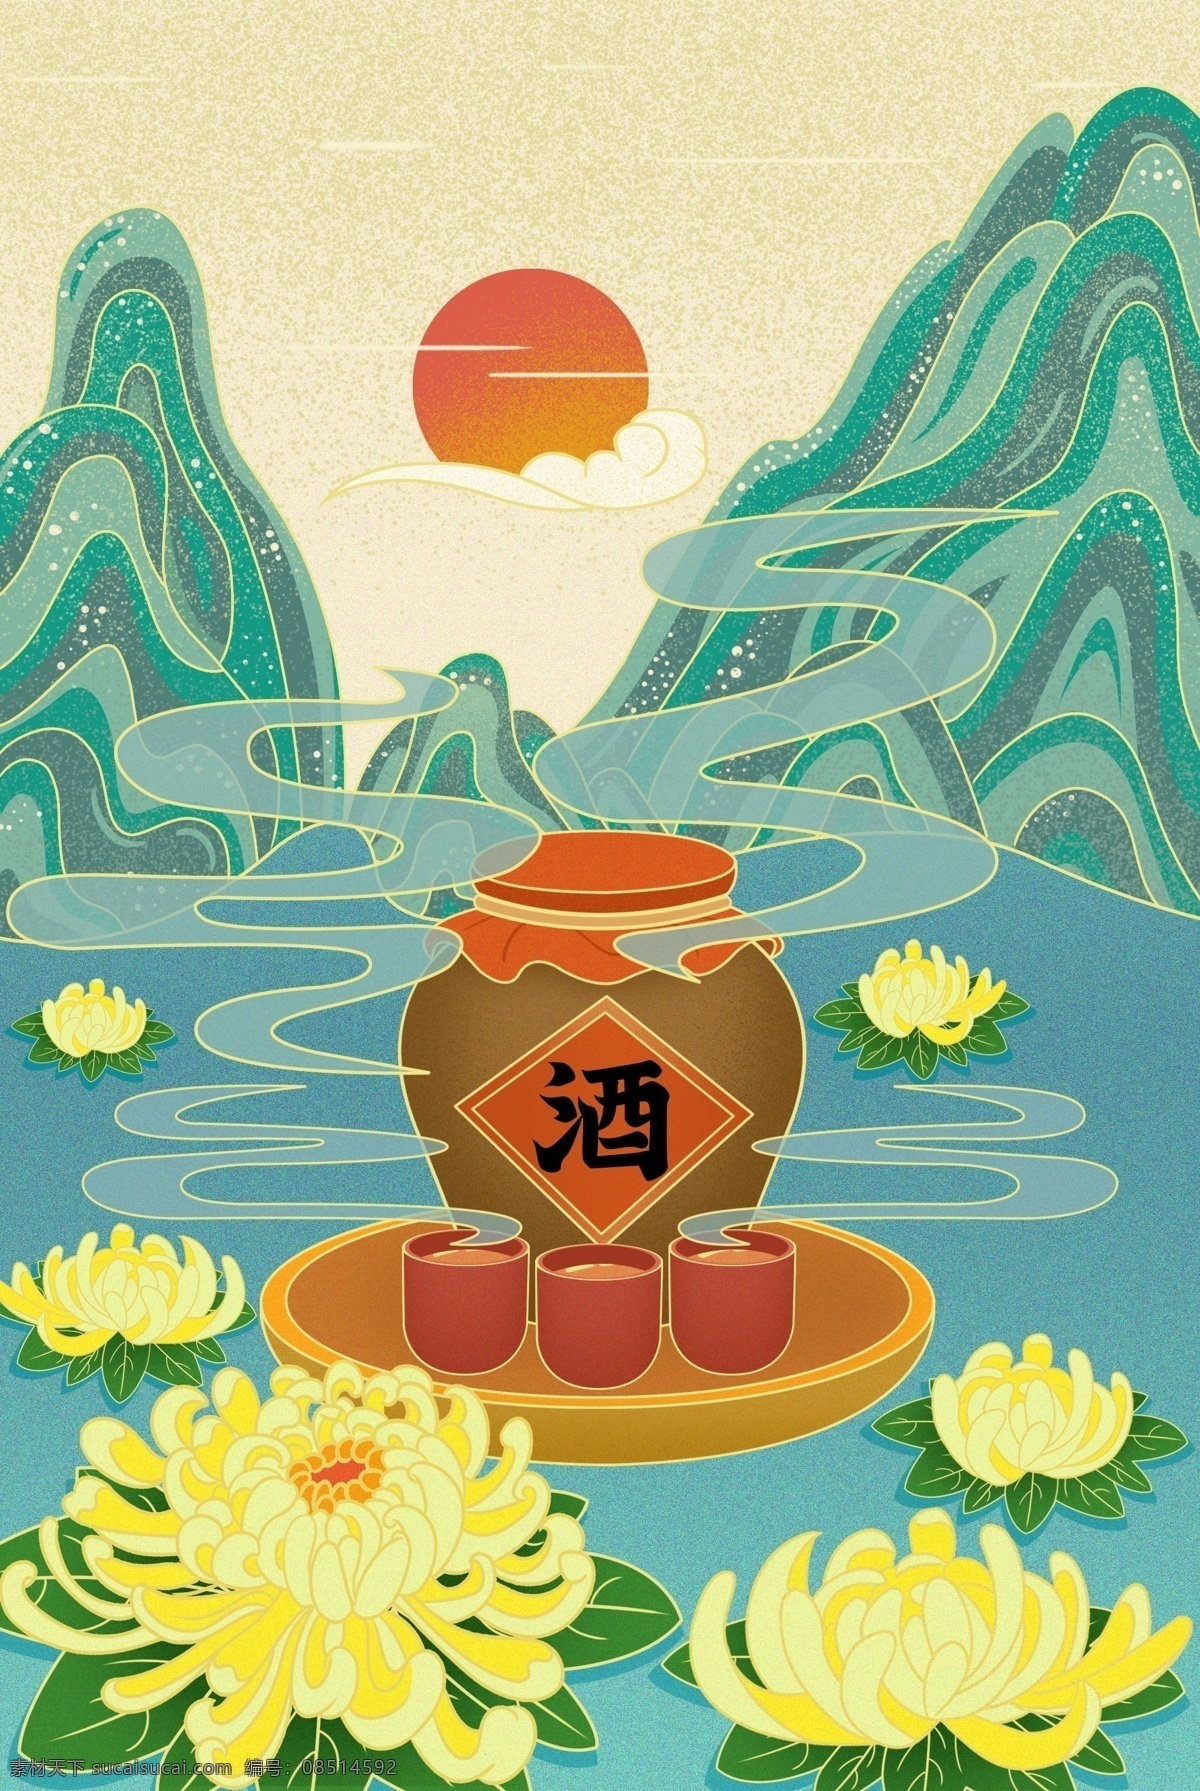 菊花 山水 酒 风景 中国风插画 手绘 沙画 分层